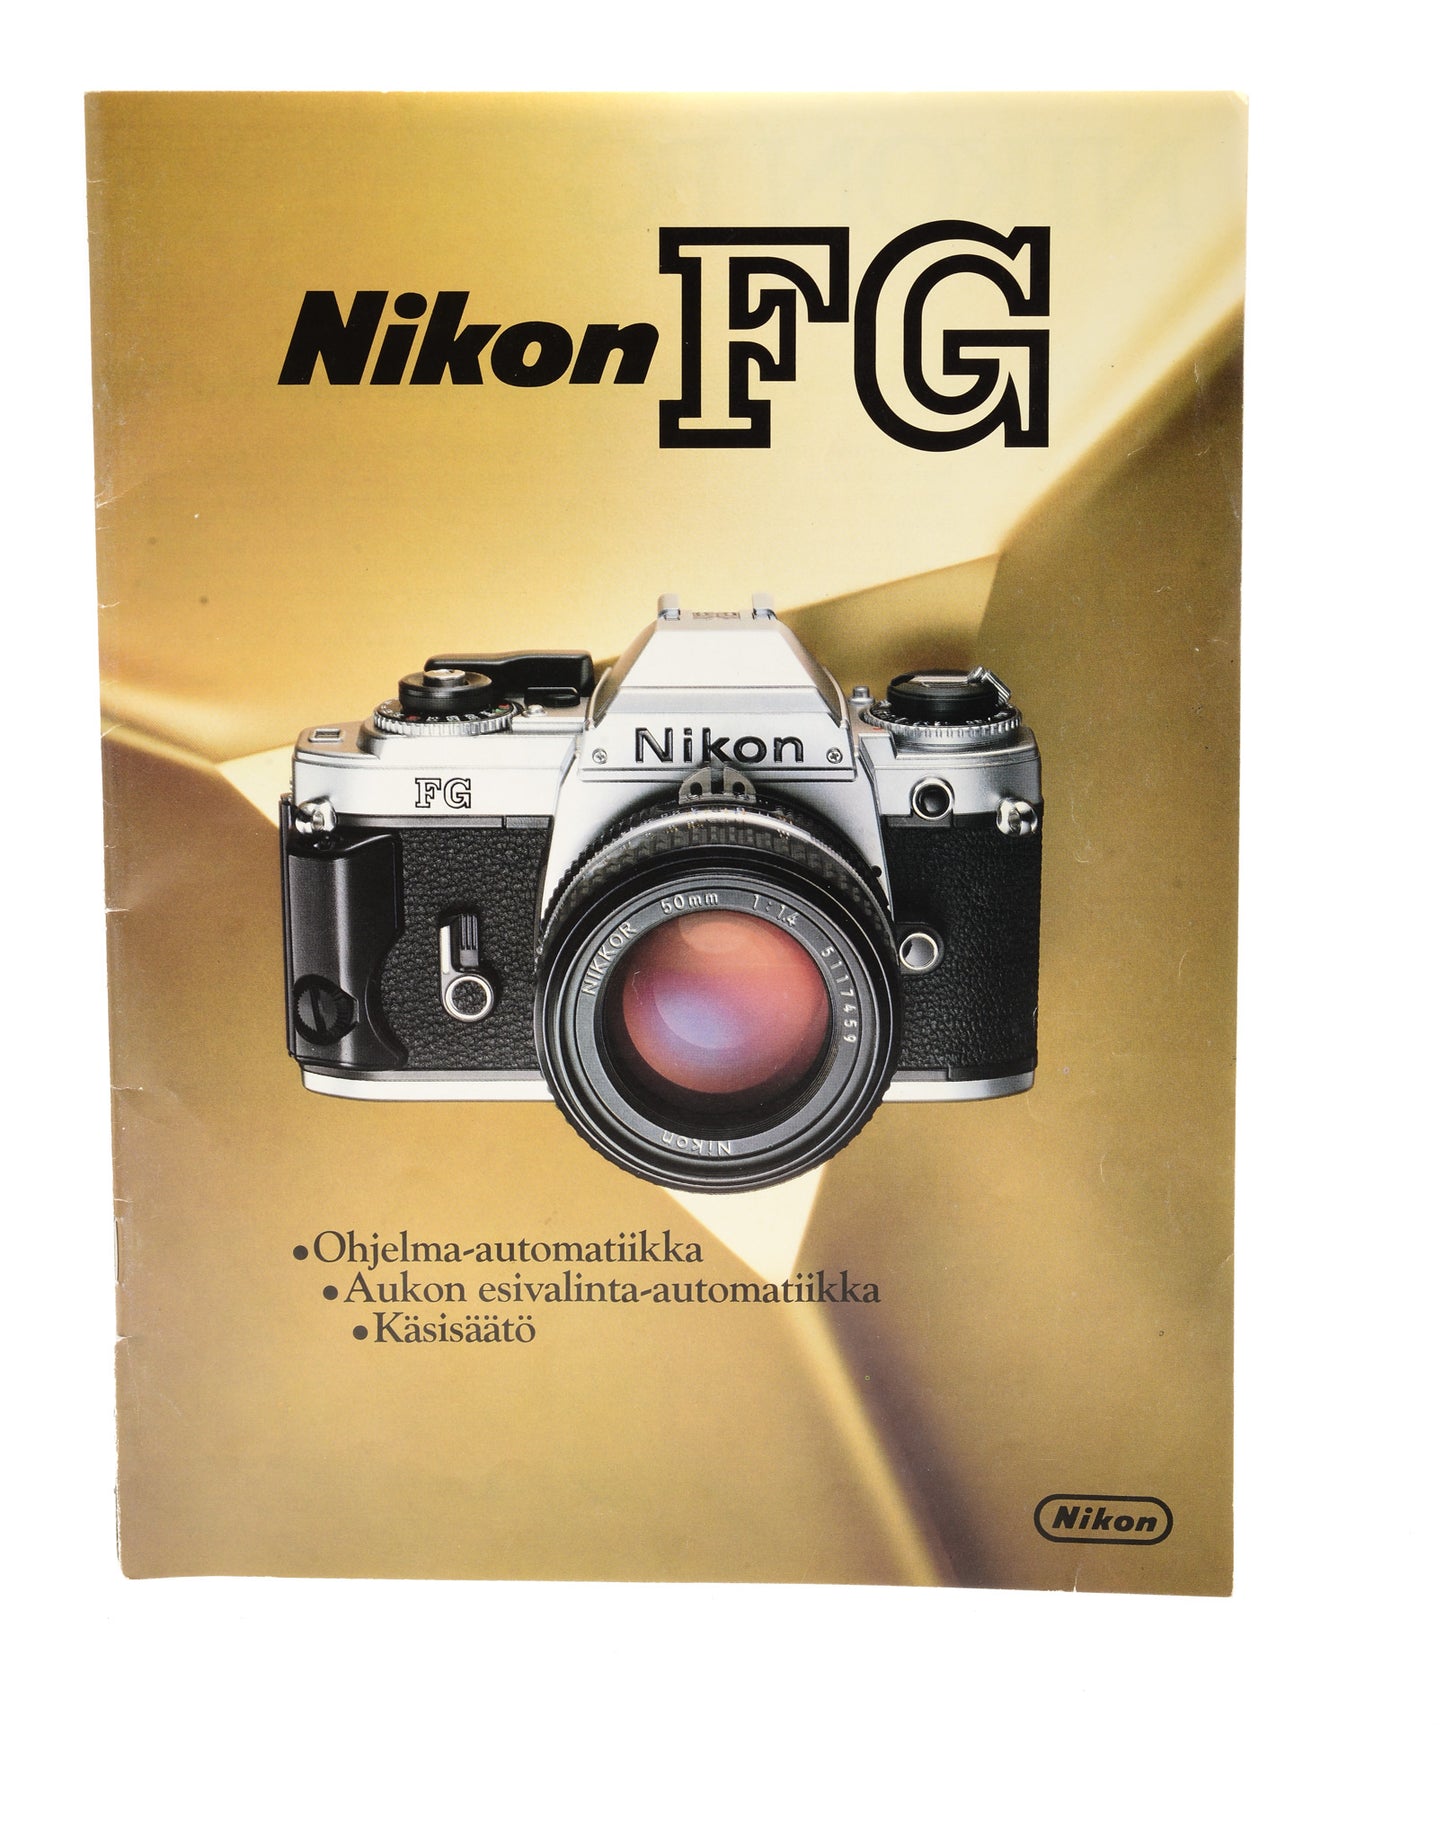 Nikon FG Quide - Accessory